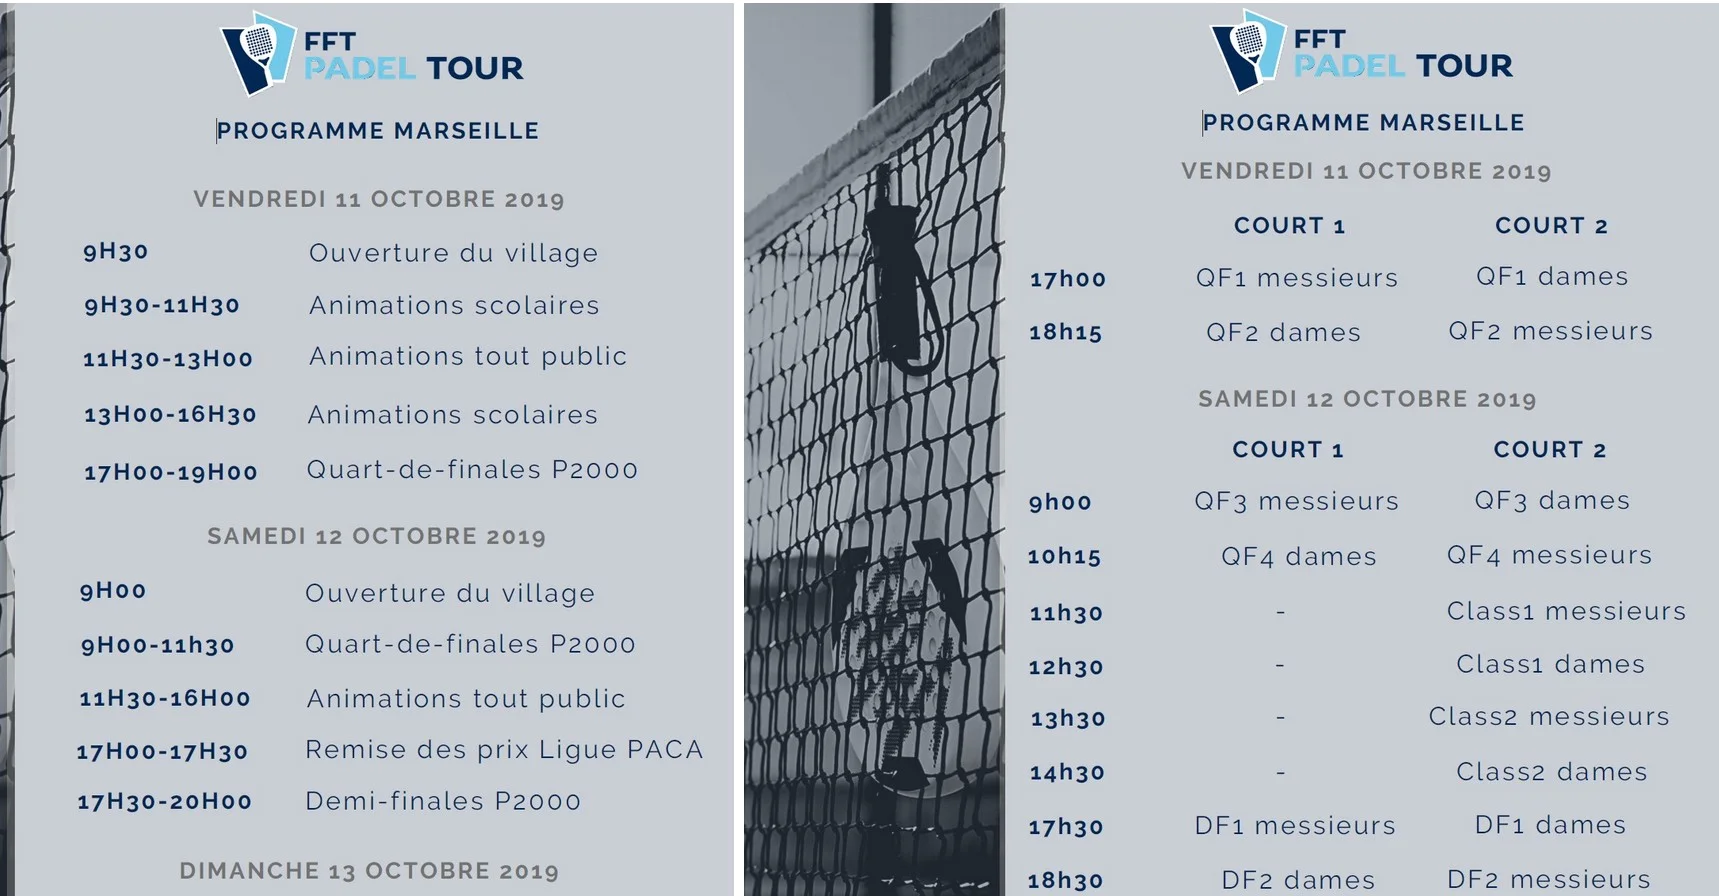 FFT Padel Tour Marsiglia – Programma del fine settimana